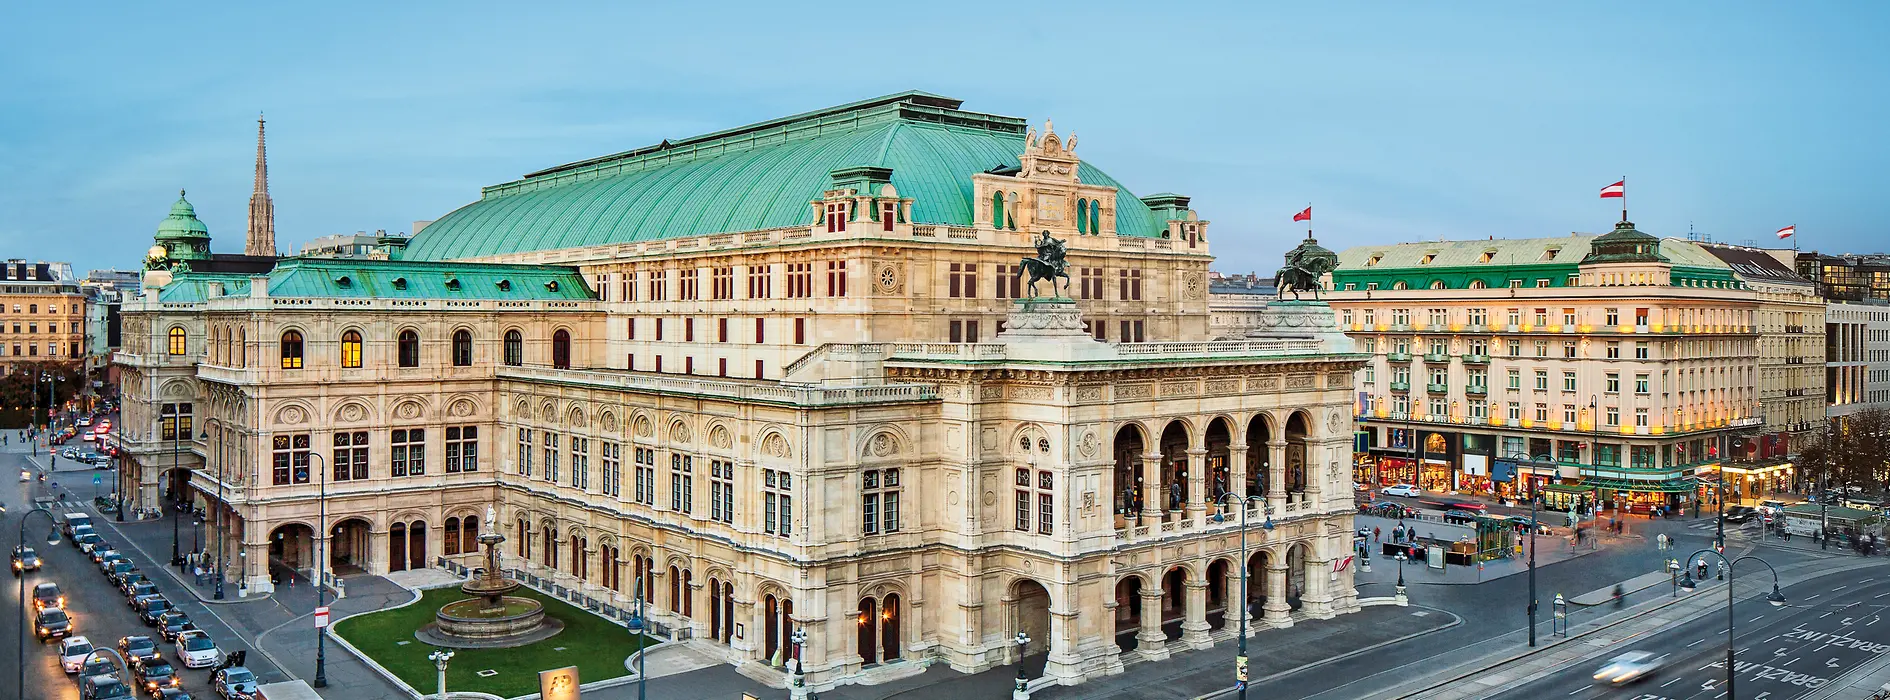 Bécsi Állami Operaház